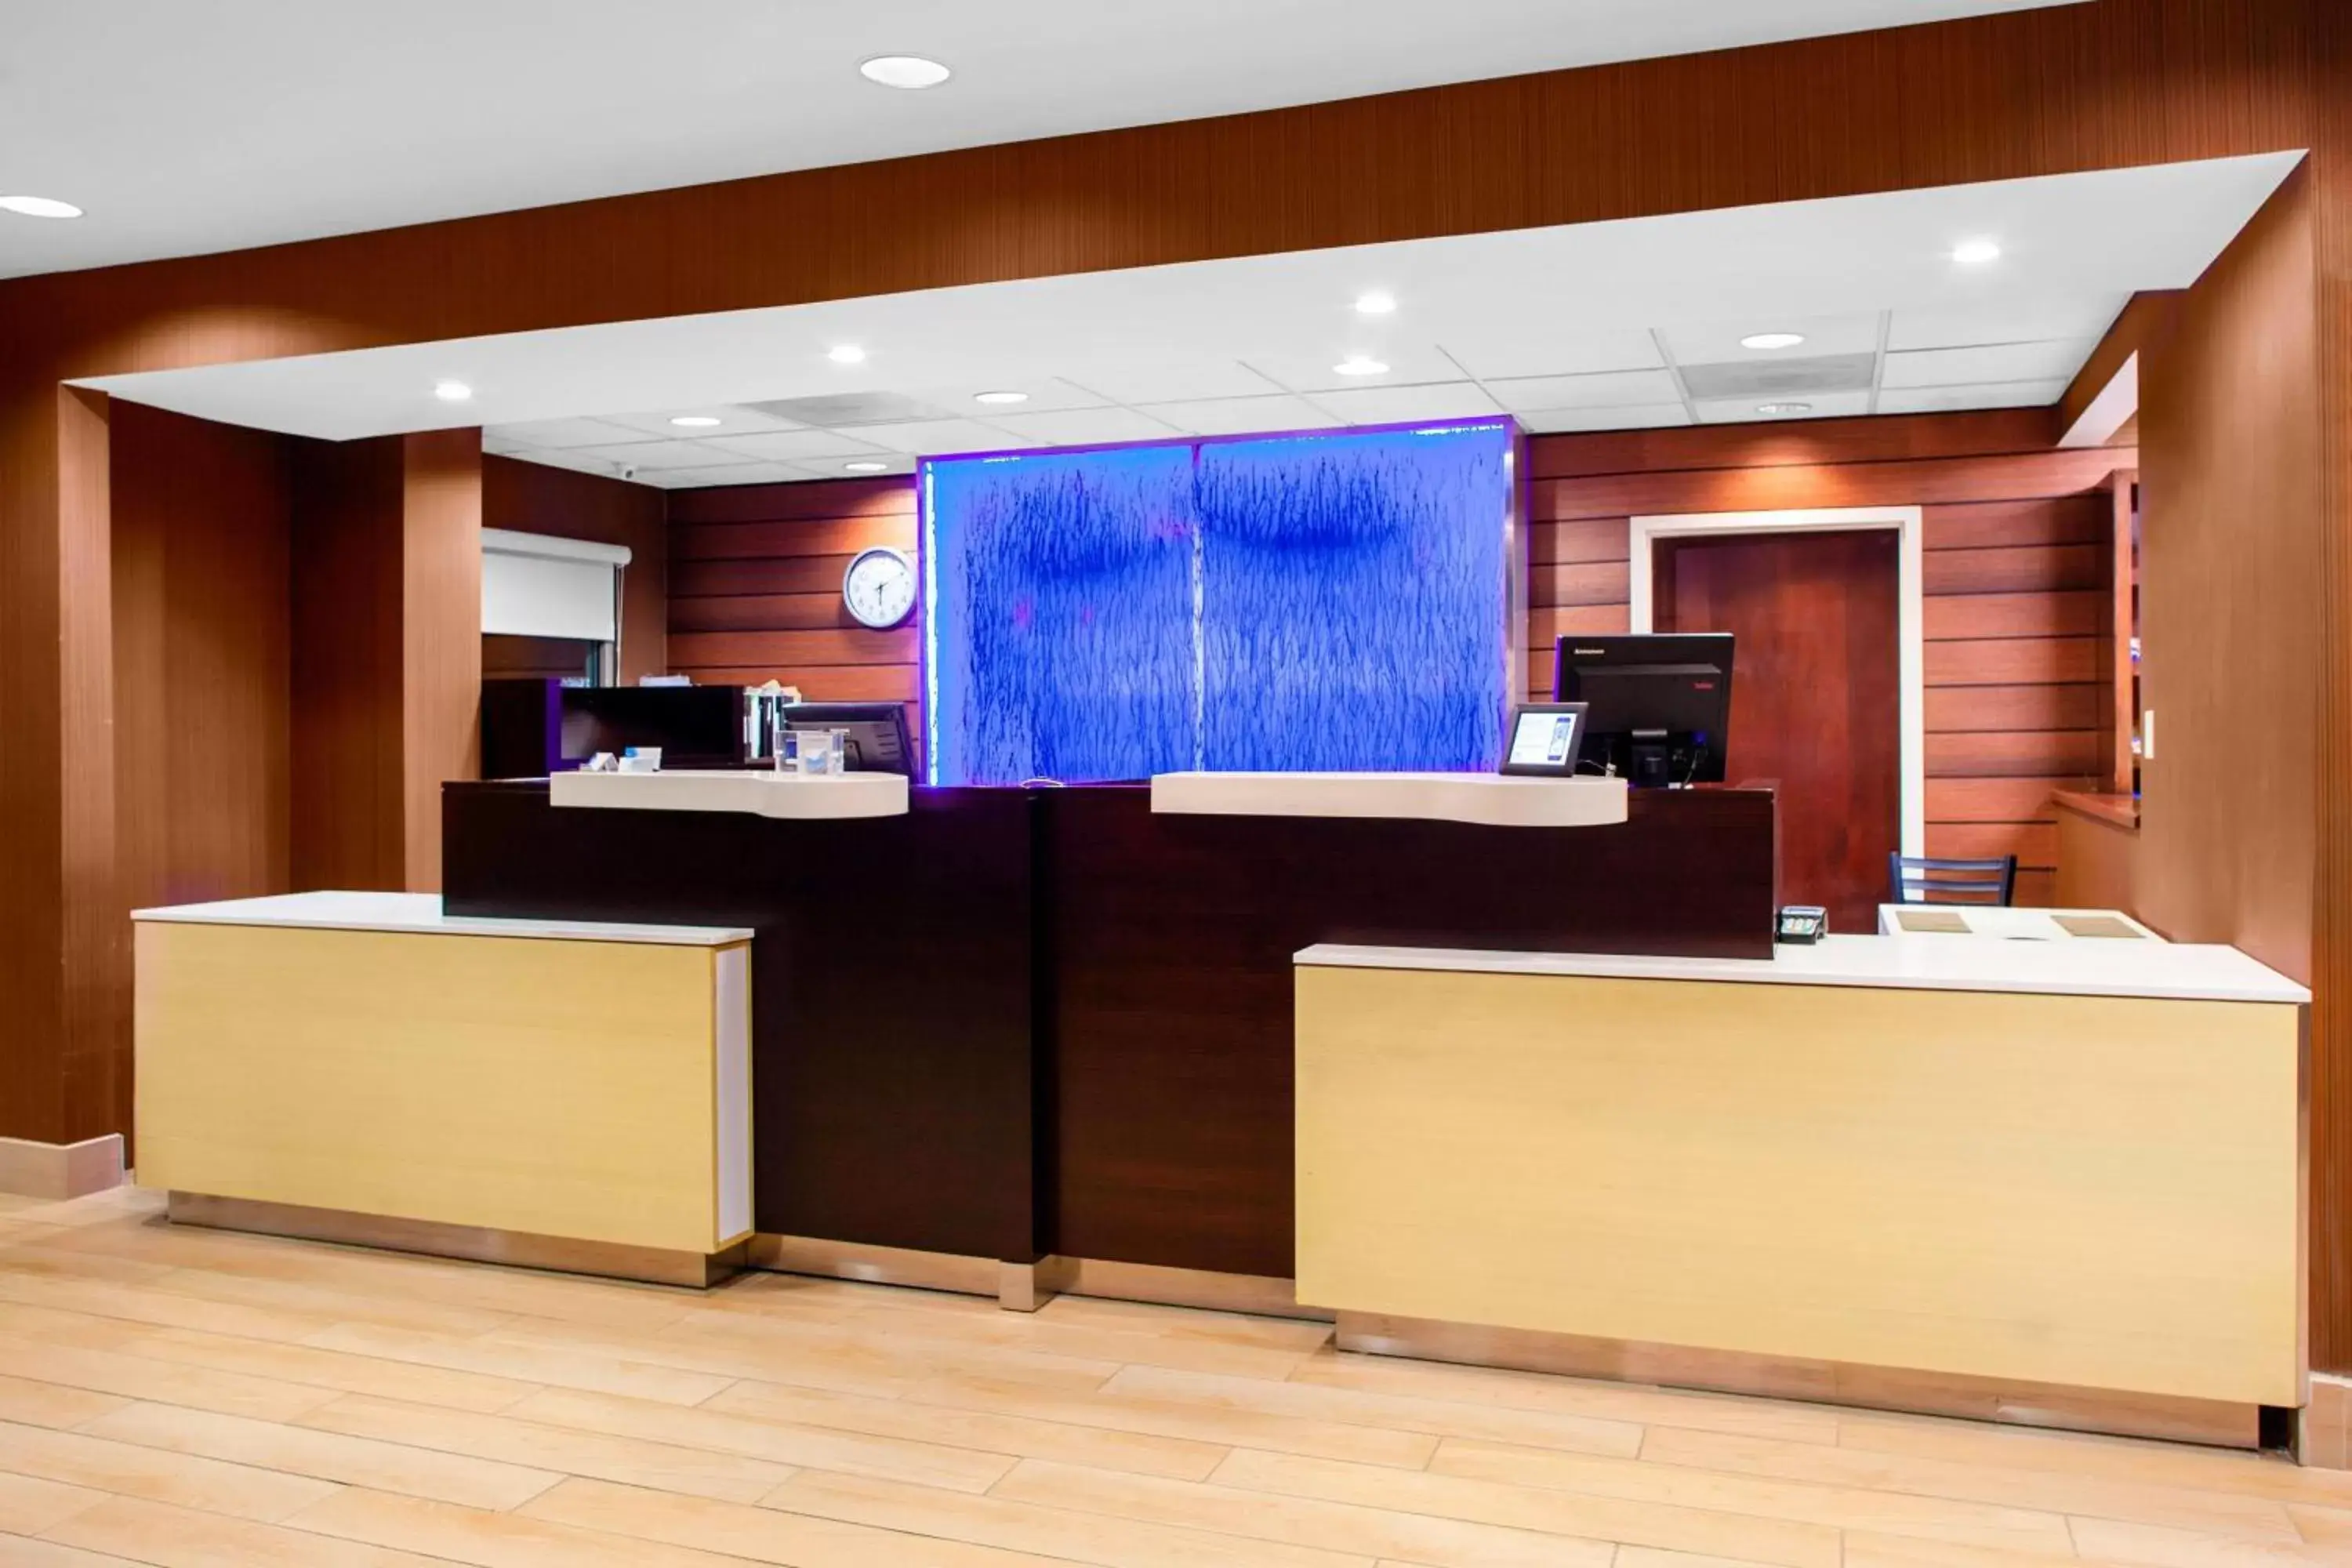 Lobby or reception, Lobby/Reception in Fairfield Inn & Suites Macon